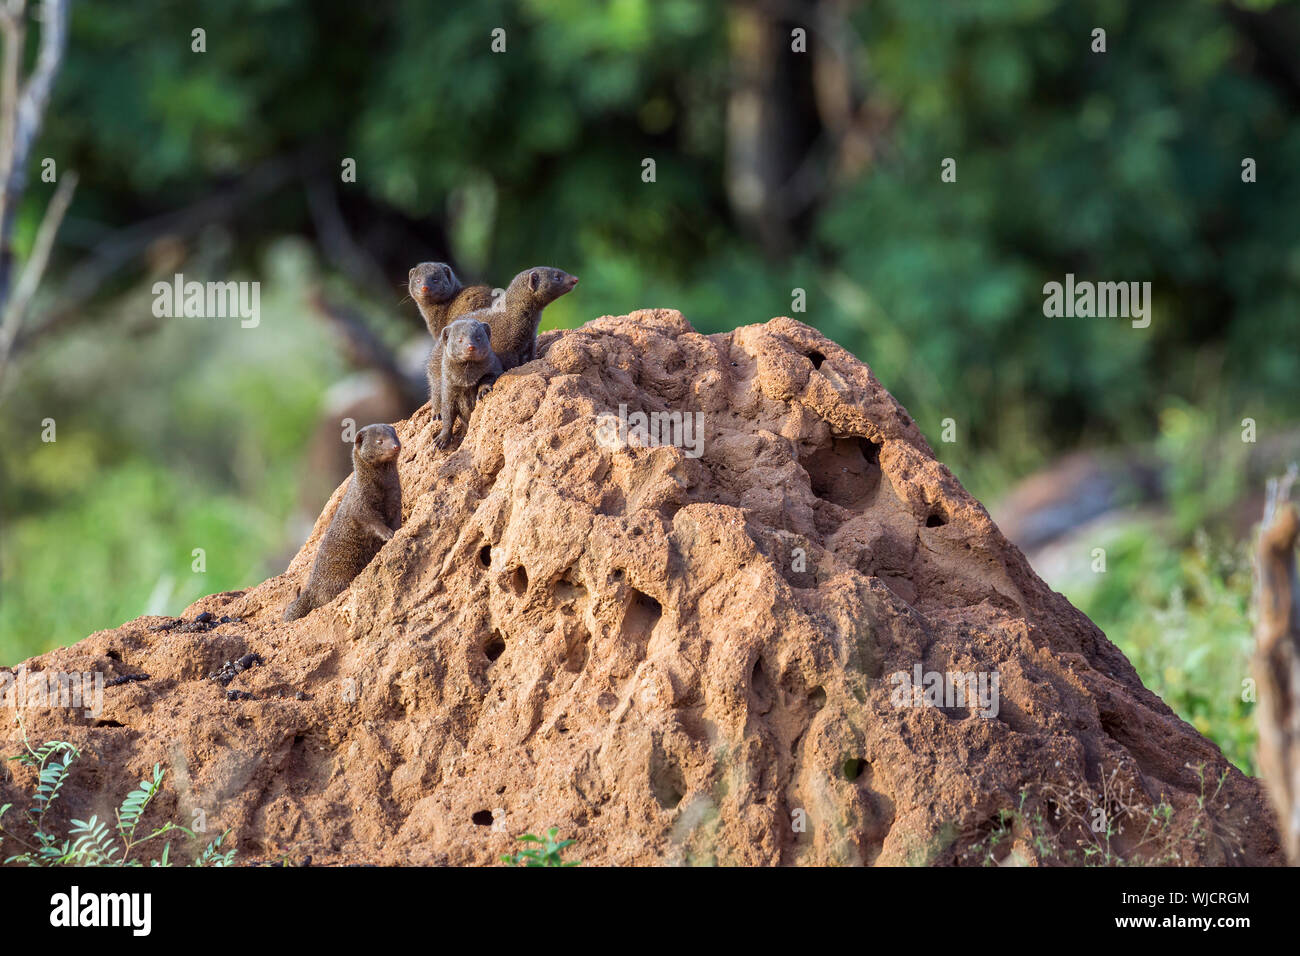 Tre Comuni la mangusta nana permanente sulla termite mound nel Parco Nazionale di Kruger, Sud Africa ; Specie Helogale parvula famiglia dei Herpestidae Foto Stock